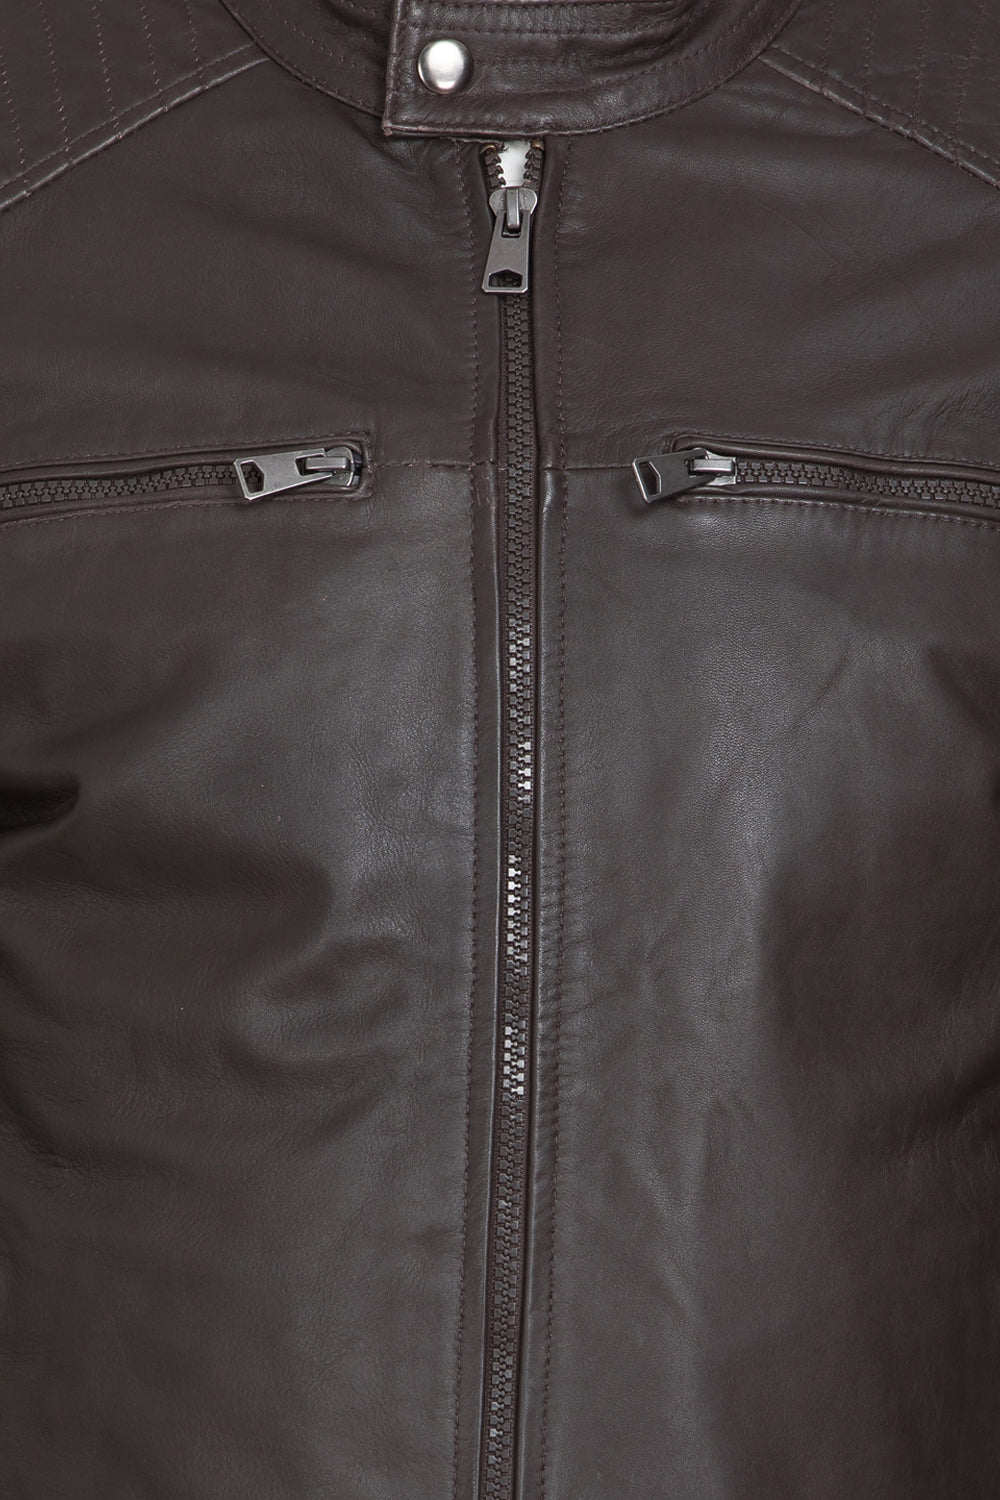 Justanned Dusk Double Pocket Leather Jacket